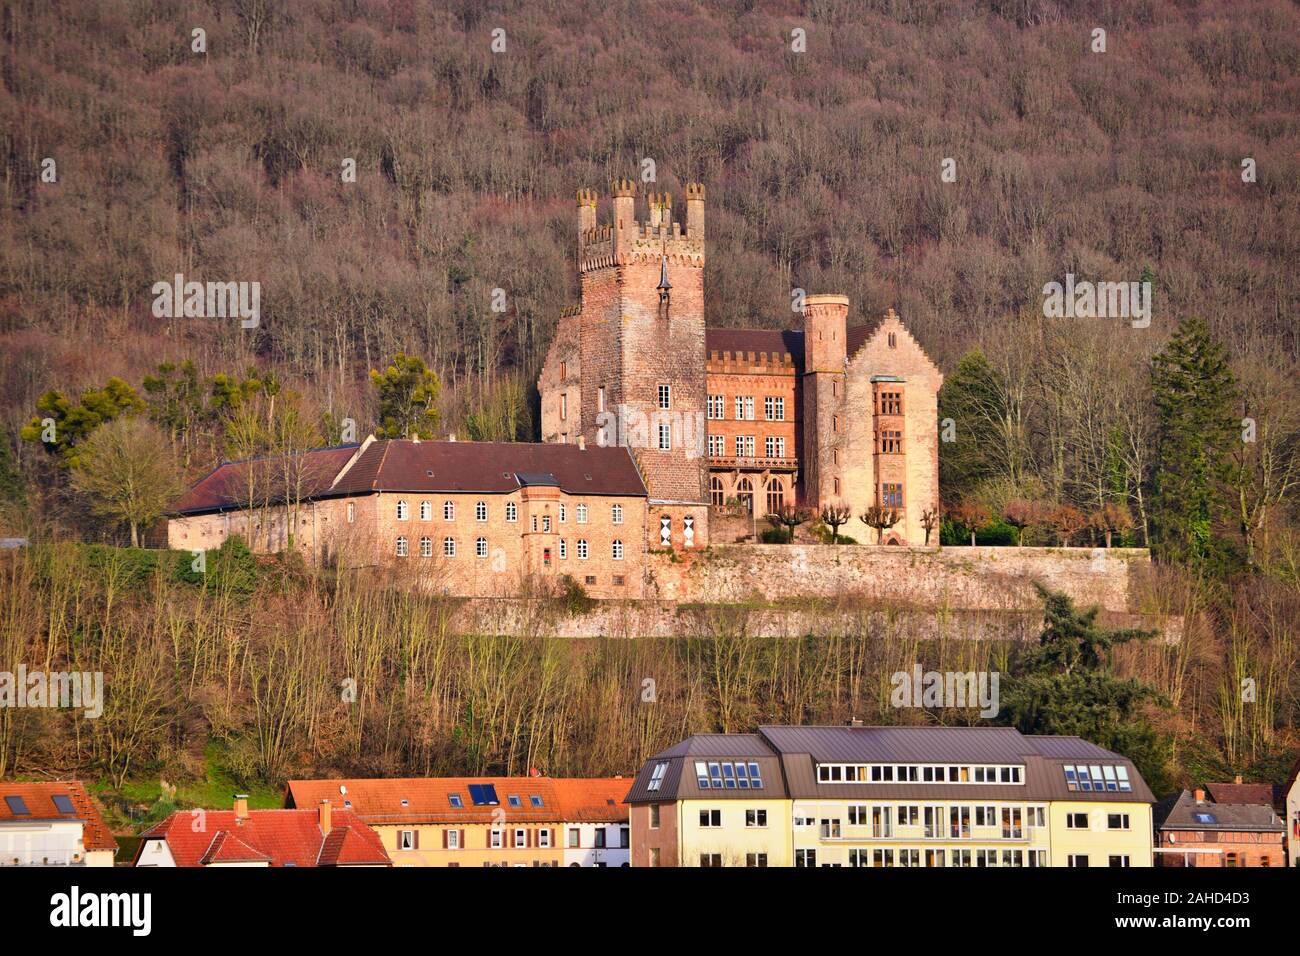 Gut erhaltene und bewohnte mittelalterliche Deutsche Hill Burg namens "ittelburg', in Odenwald in der deutschen Stadt Neckarsteinach Stockfoto